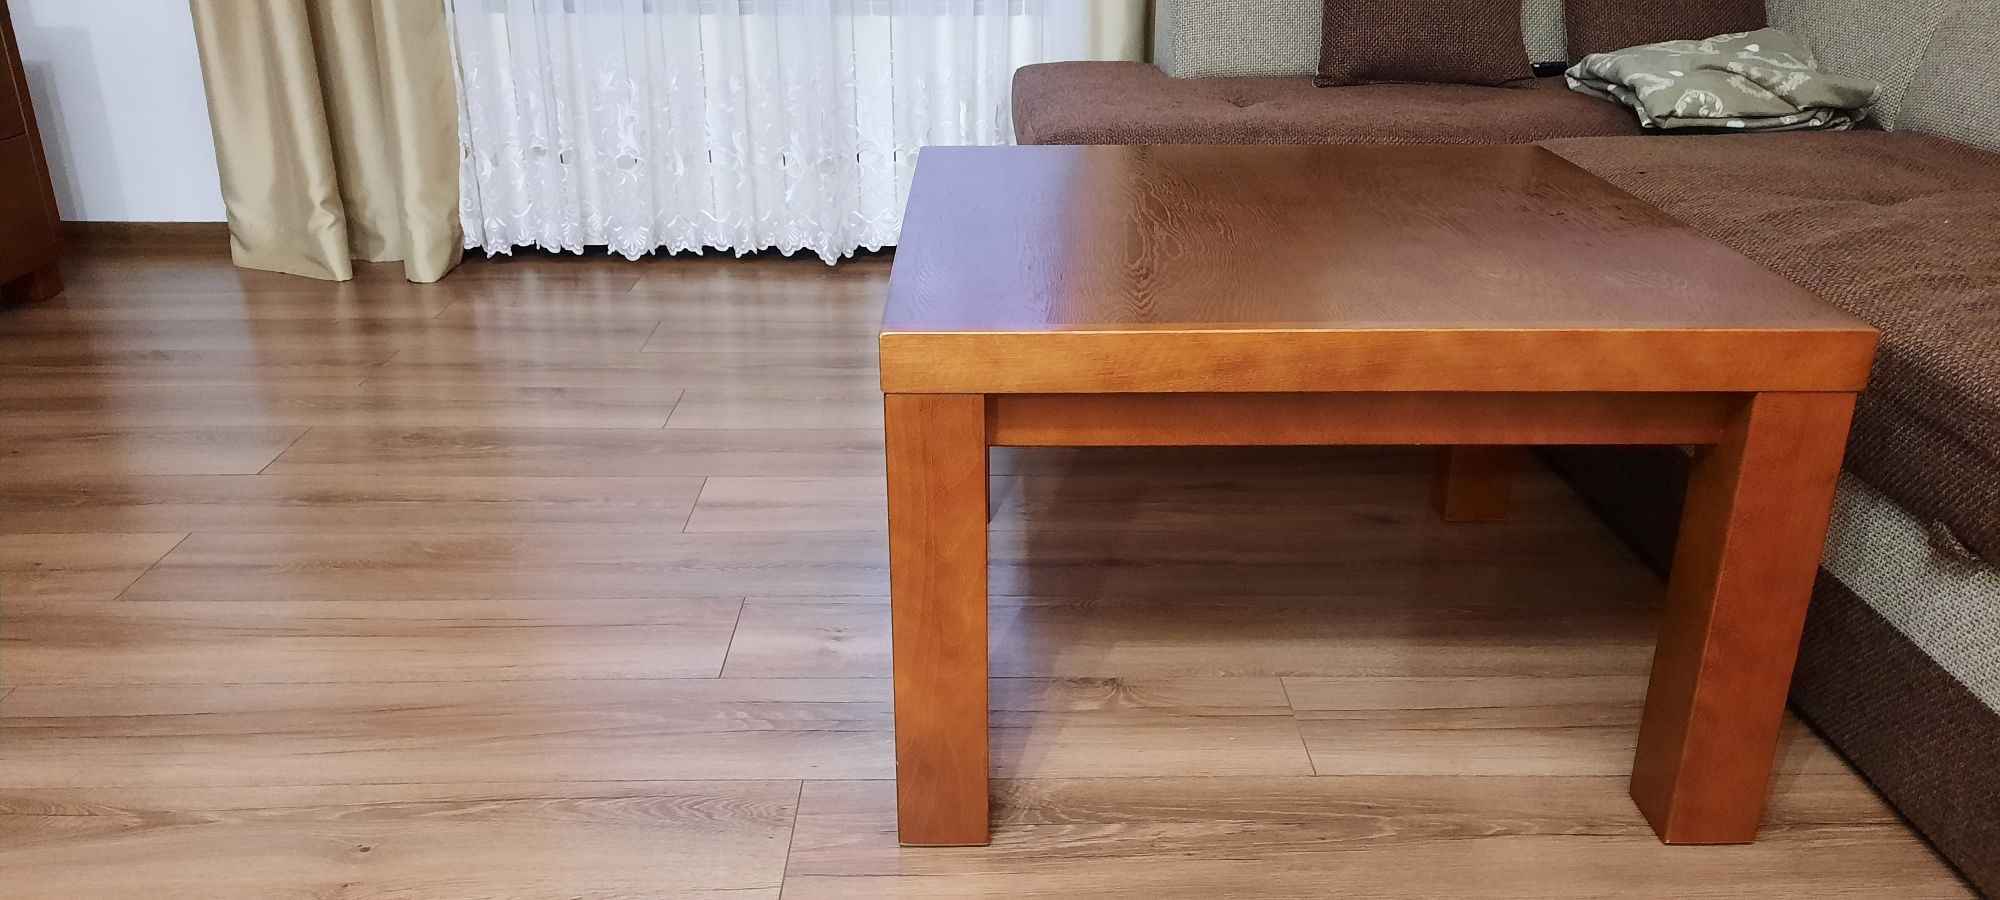 Stół, krzesła, ława